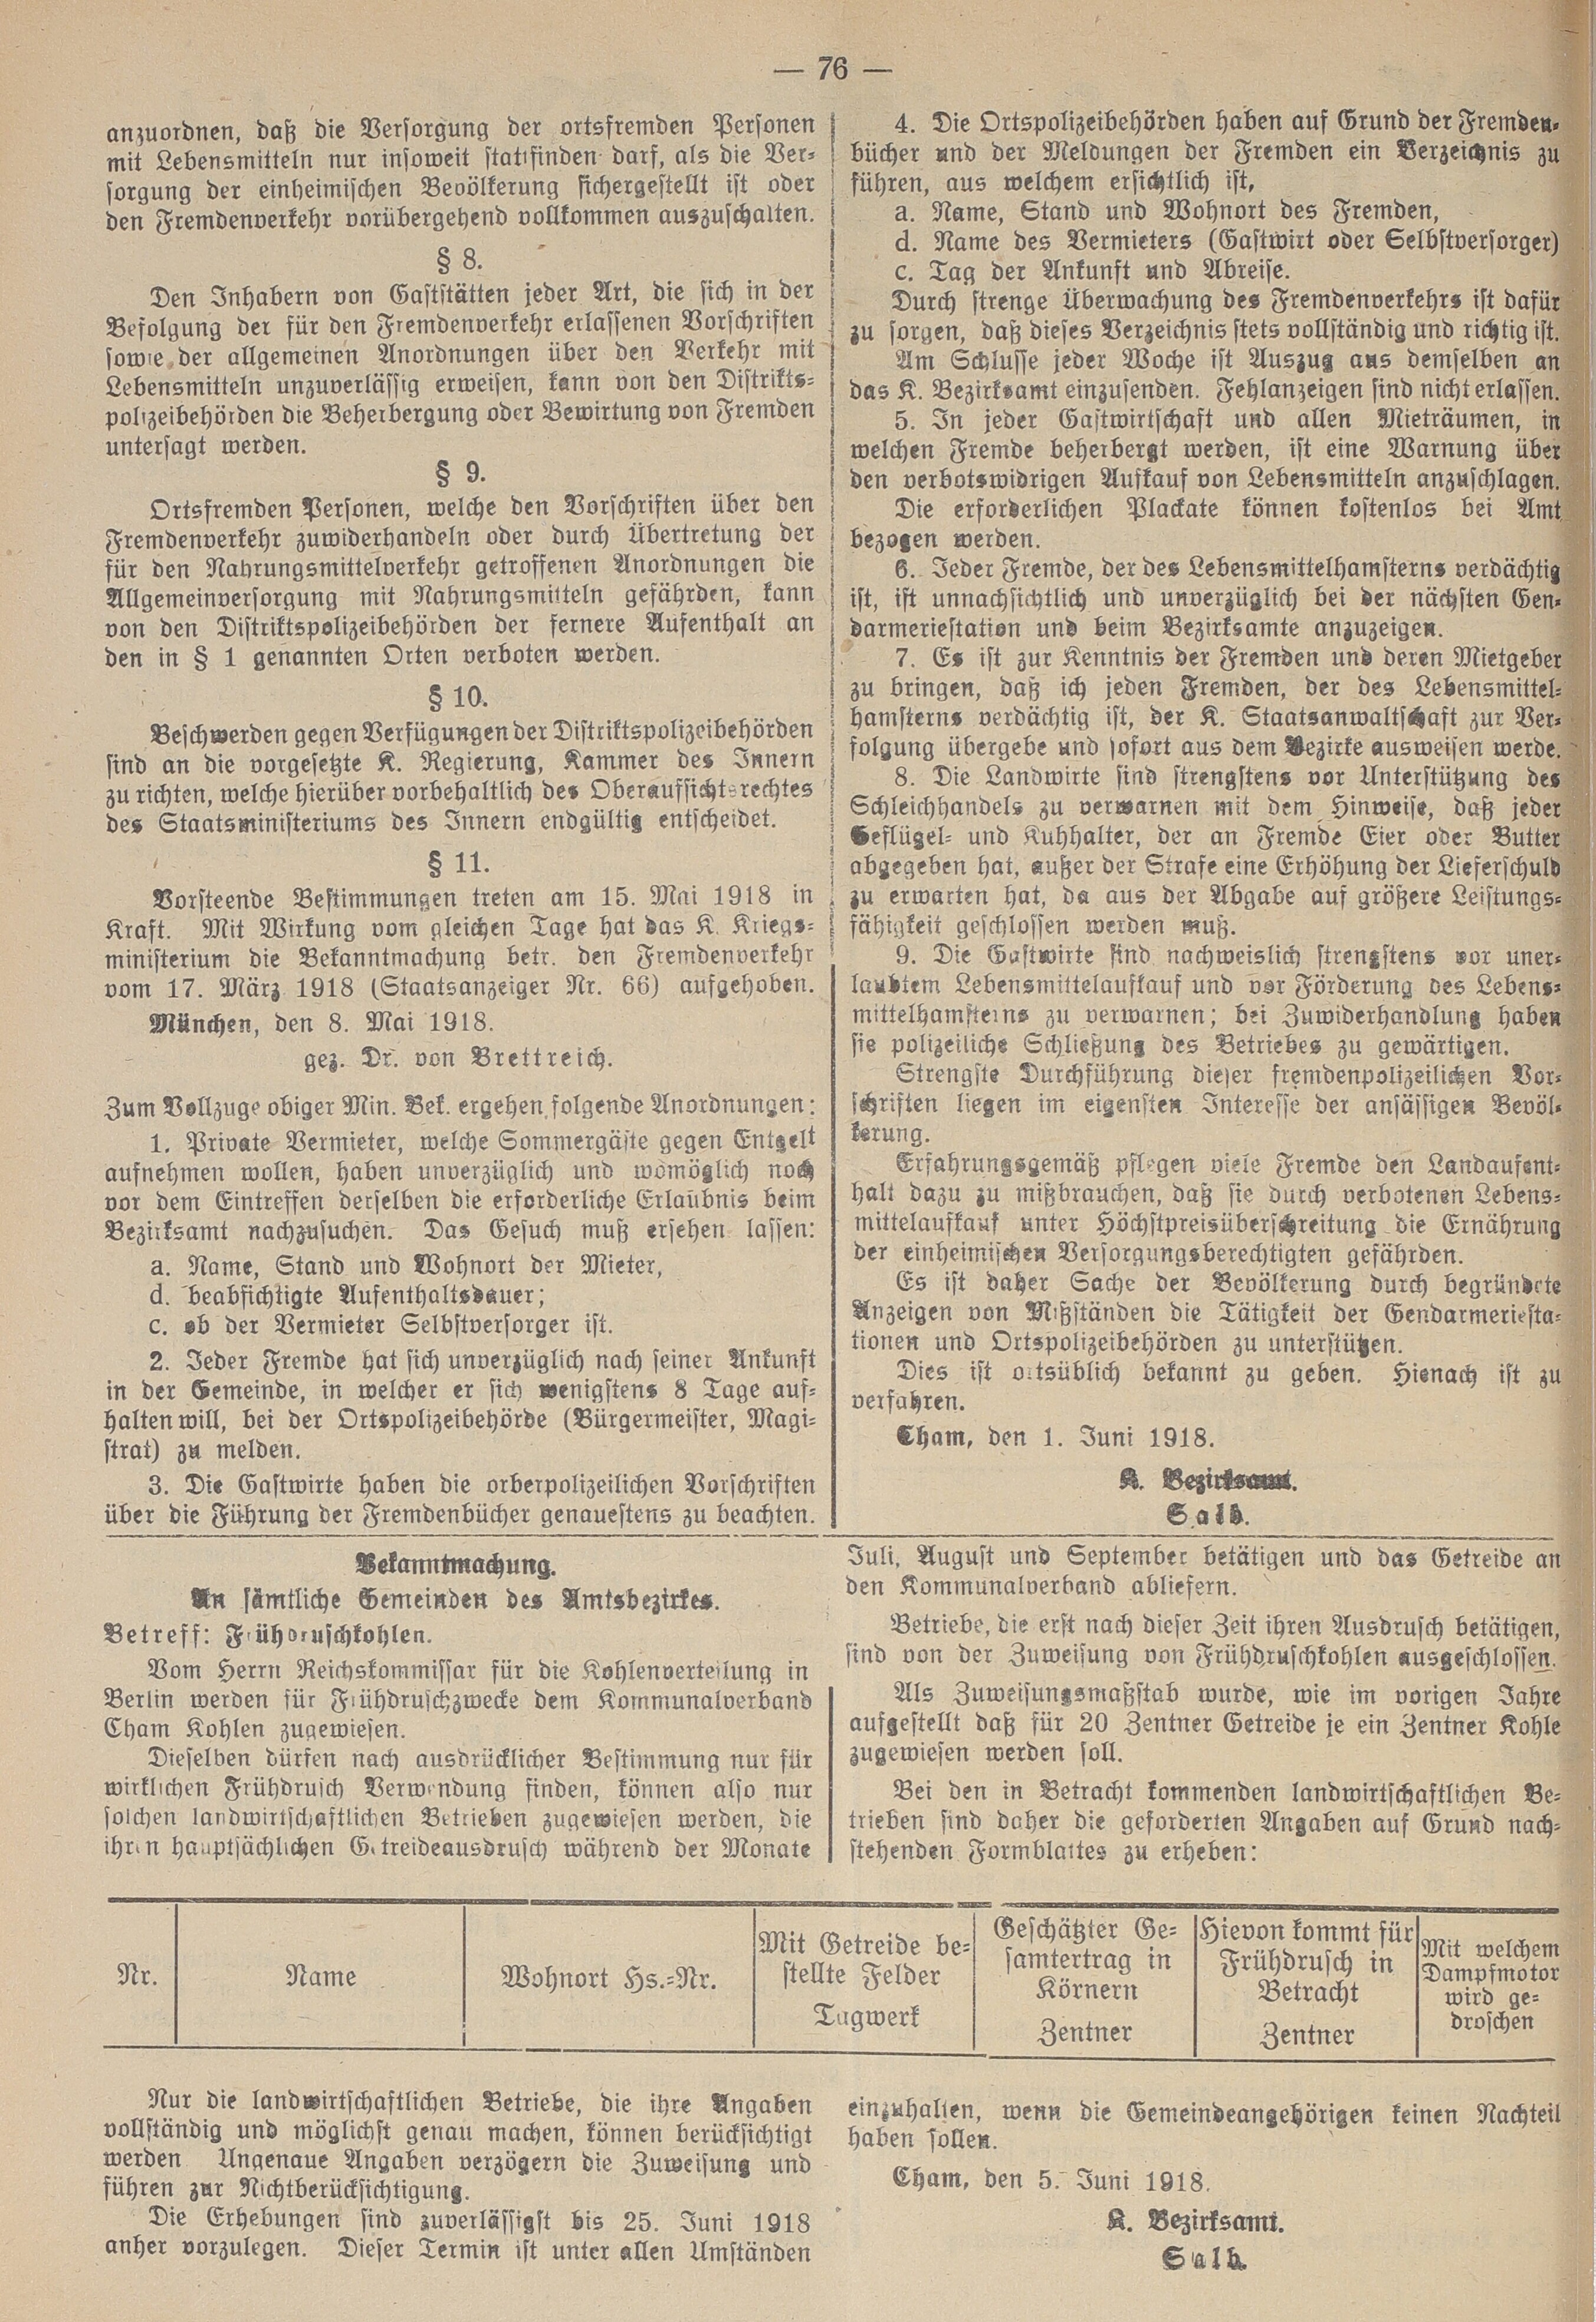 2. amtsblatt-cham-1918-06-08-n25_3570